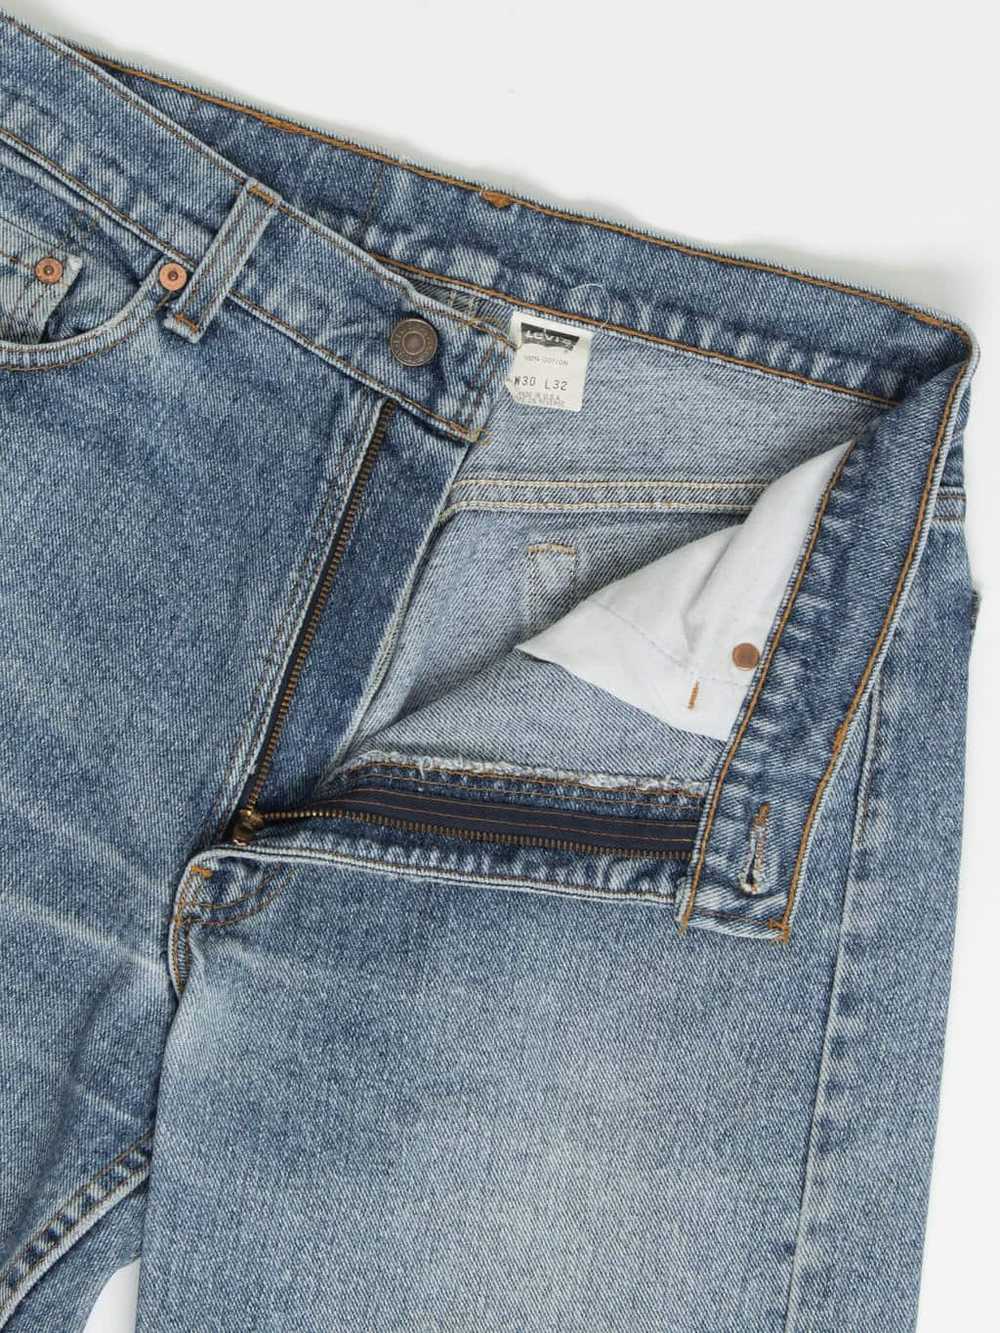 Vintage Levis 554 jeans 30 x 32 blue stonewash US… - image 2